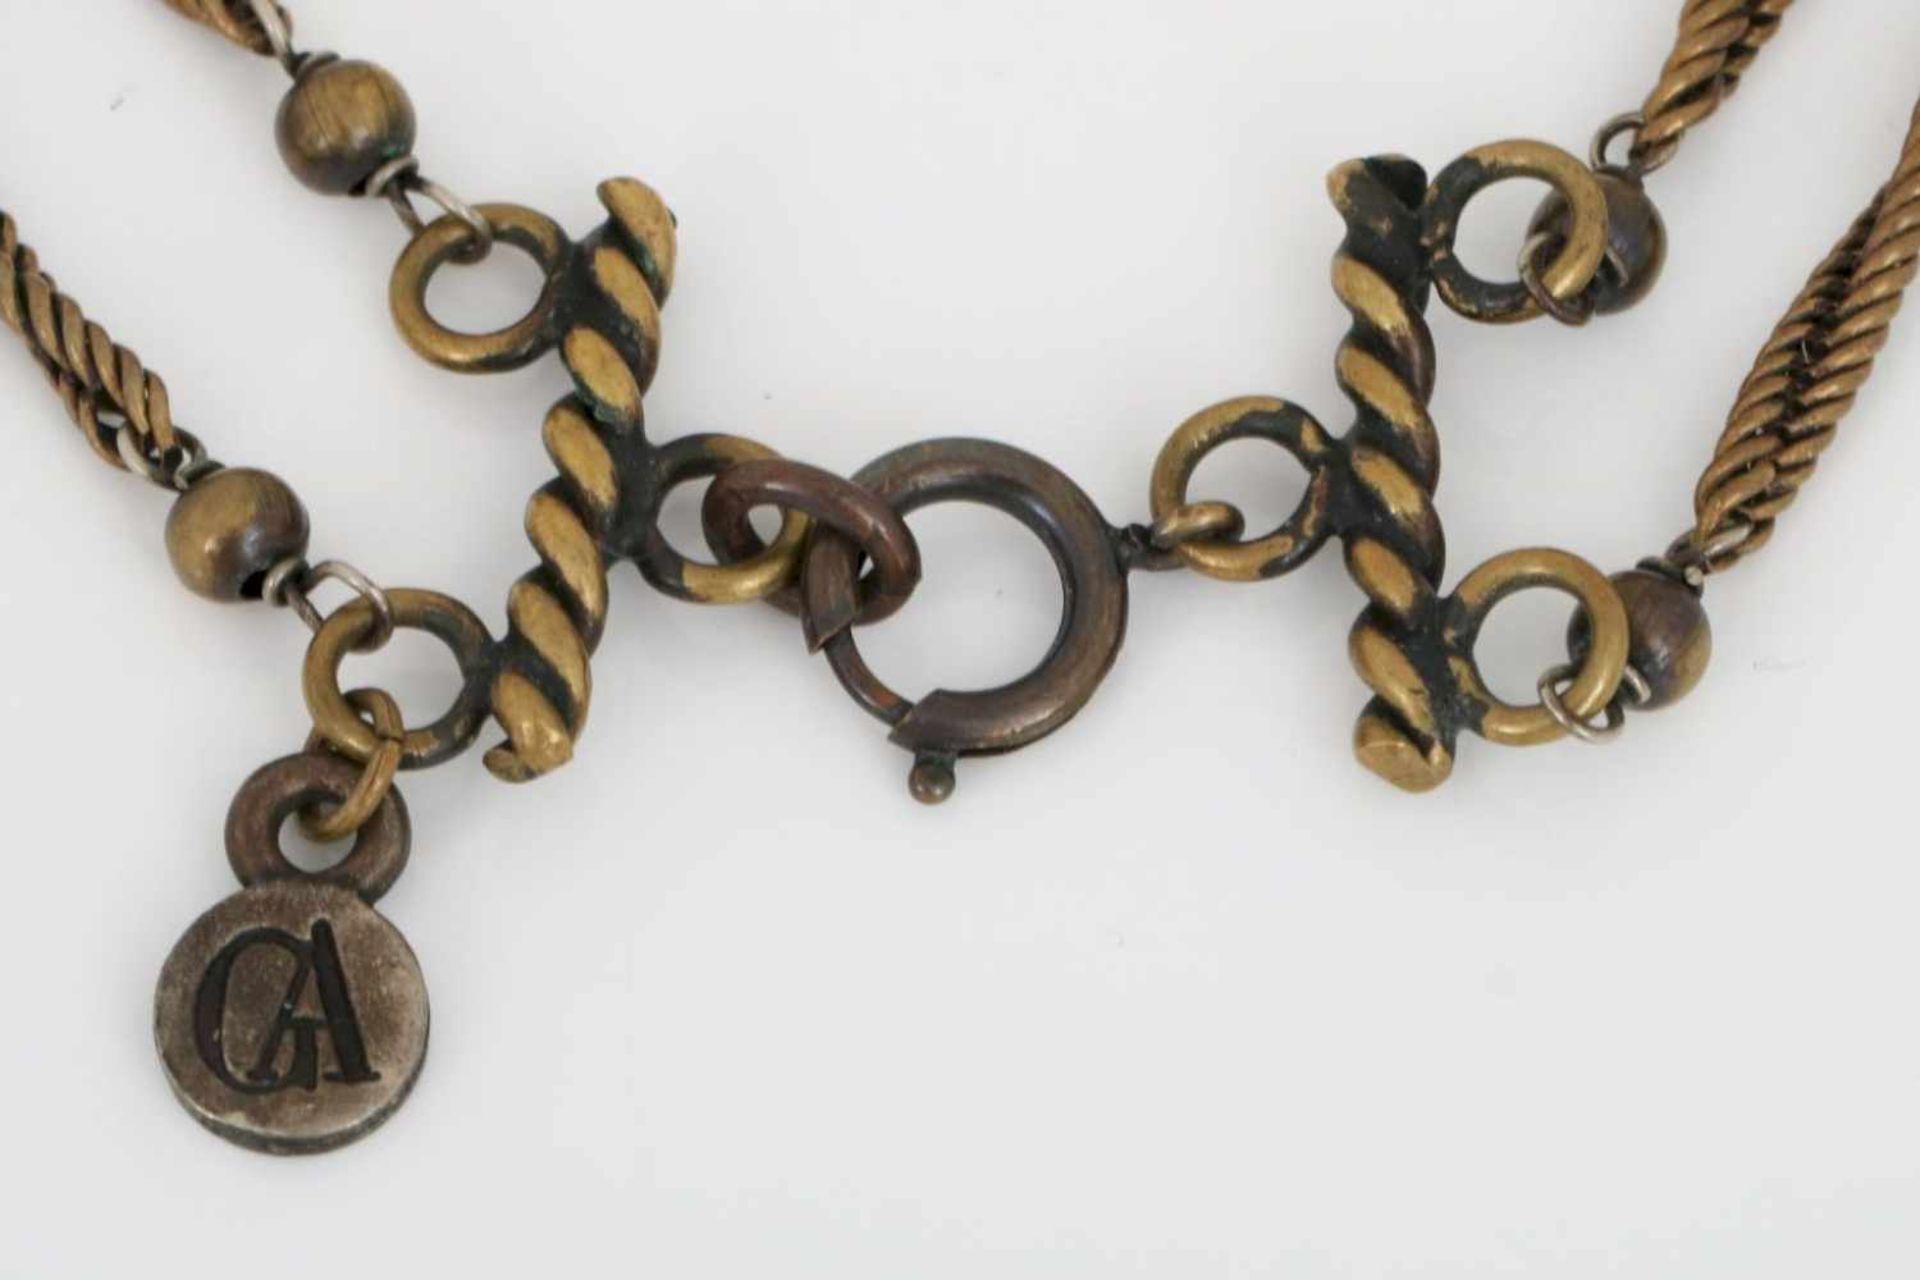 GIORGIO ARMANI HalsketteMetall und Perlmutt-ähnliche, ovale Elemente, 2-reihig, L ca. 47cm, im - Bild 2 aus 2